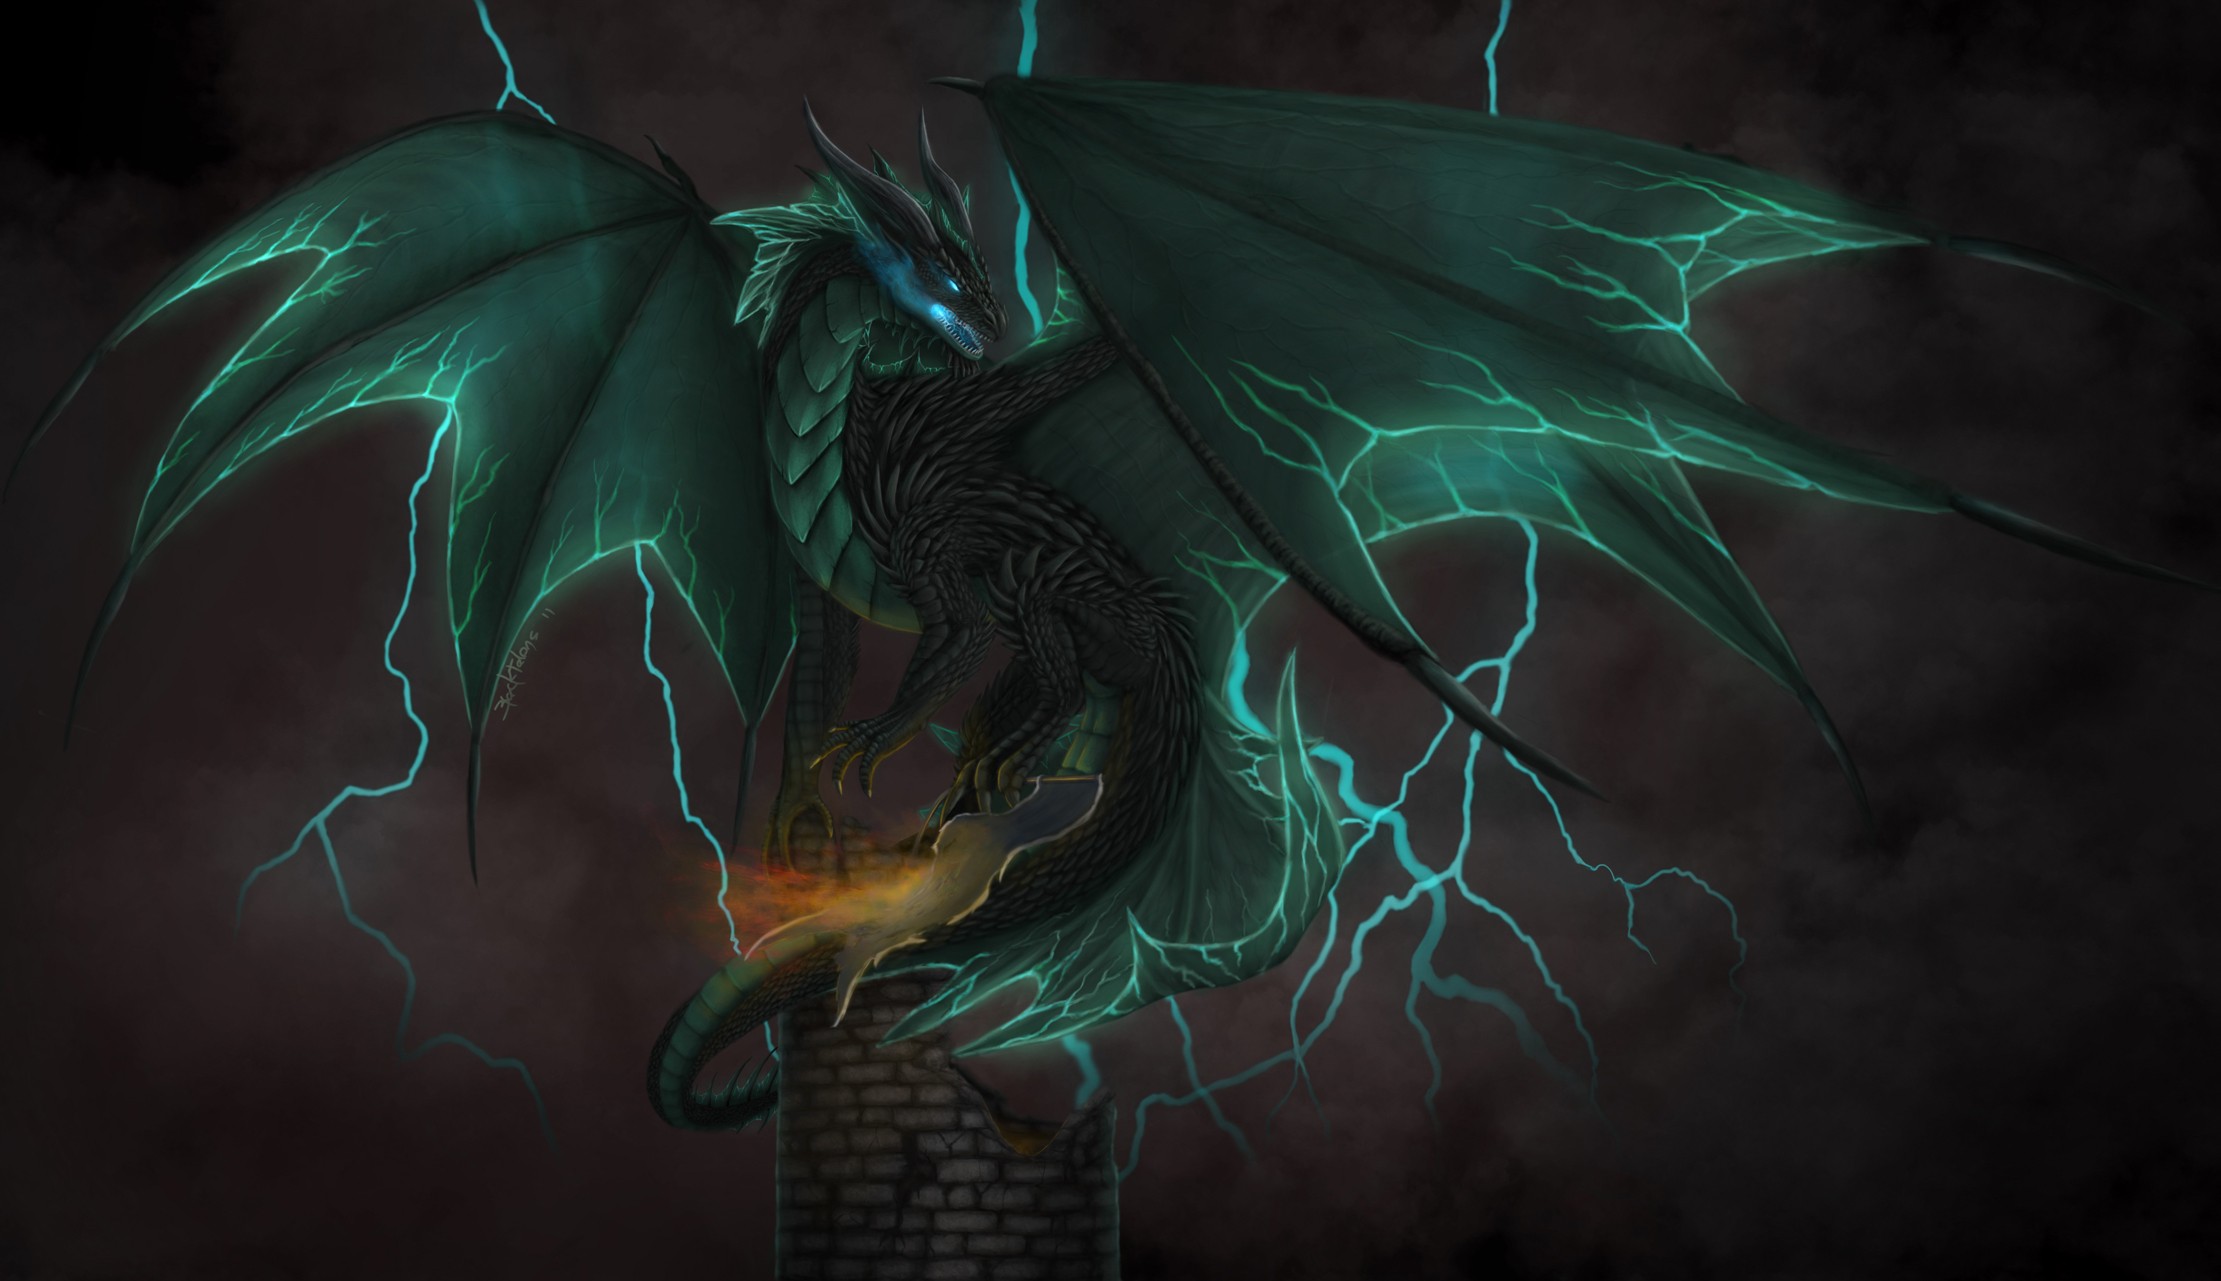 Digital Art Fantasy Art Dragon Wings Chimneys Lightning Clouds Dark 2221x1281